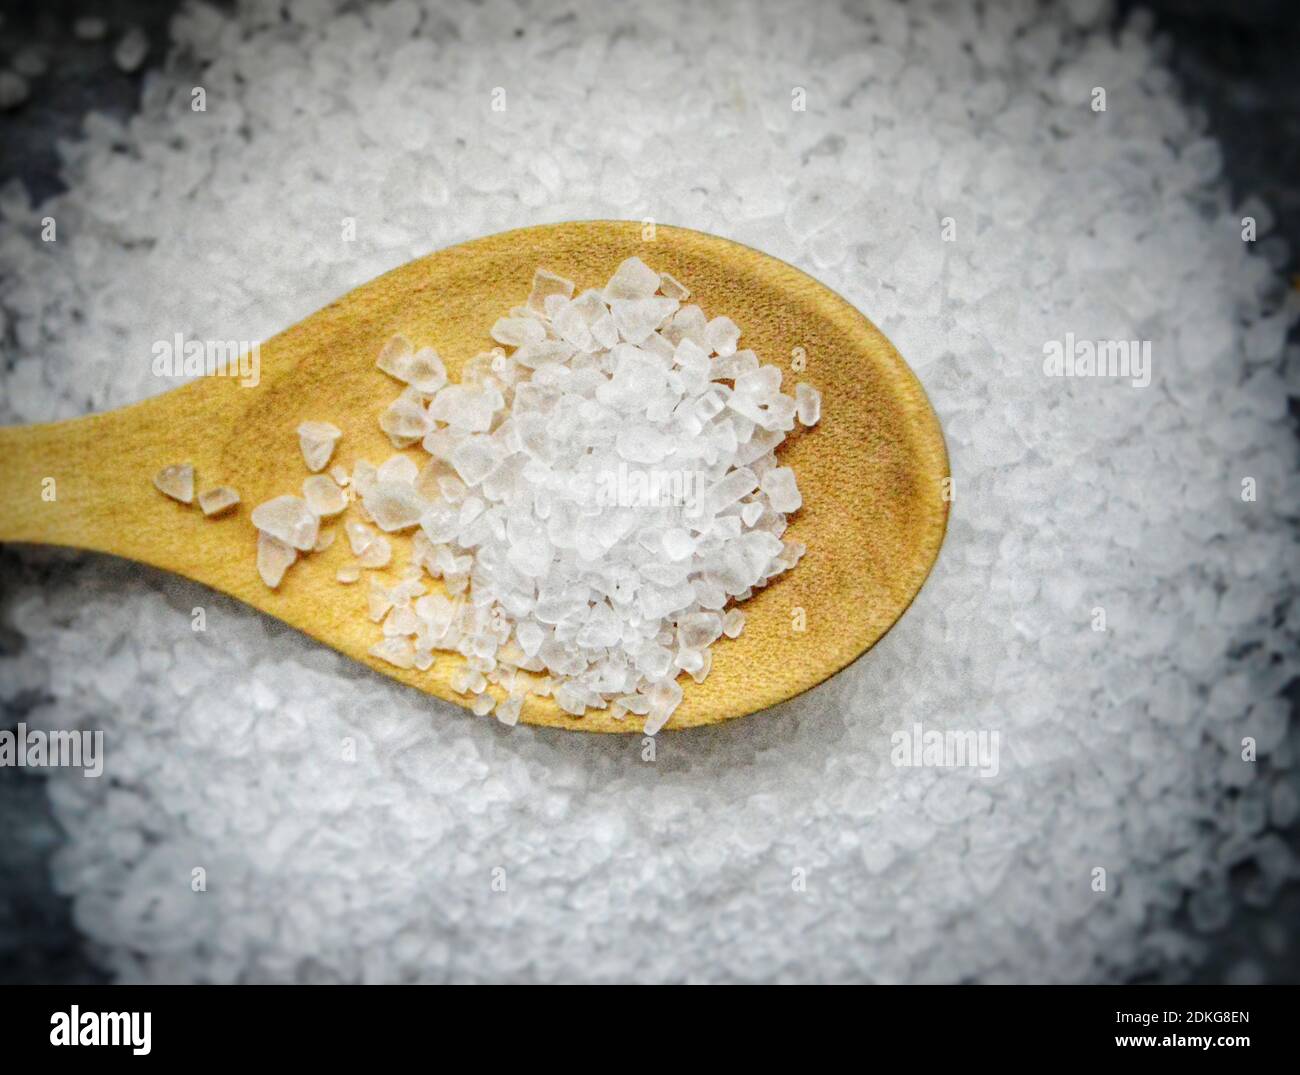 High Angle View Of Salt On Table Stock Photo